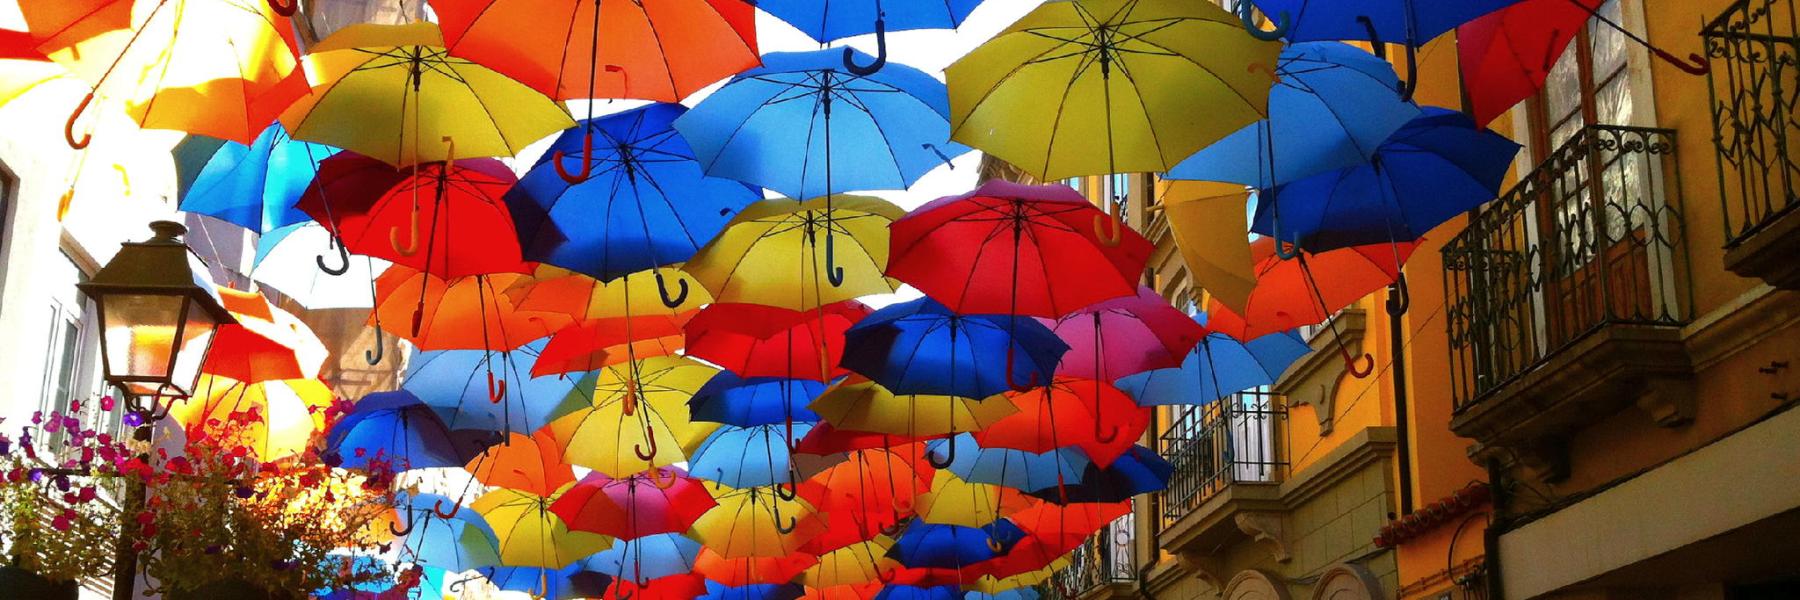 Мир зонтиков. Соляной переулок аллея парящих зонтиков. Зонтики яркие. Разноцветные зонтики. Разноцветный зонт.